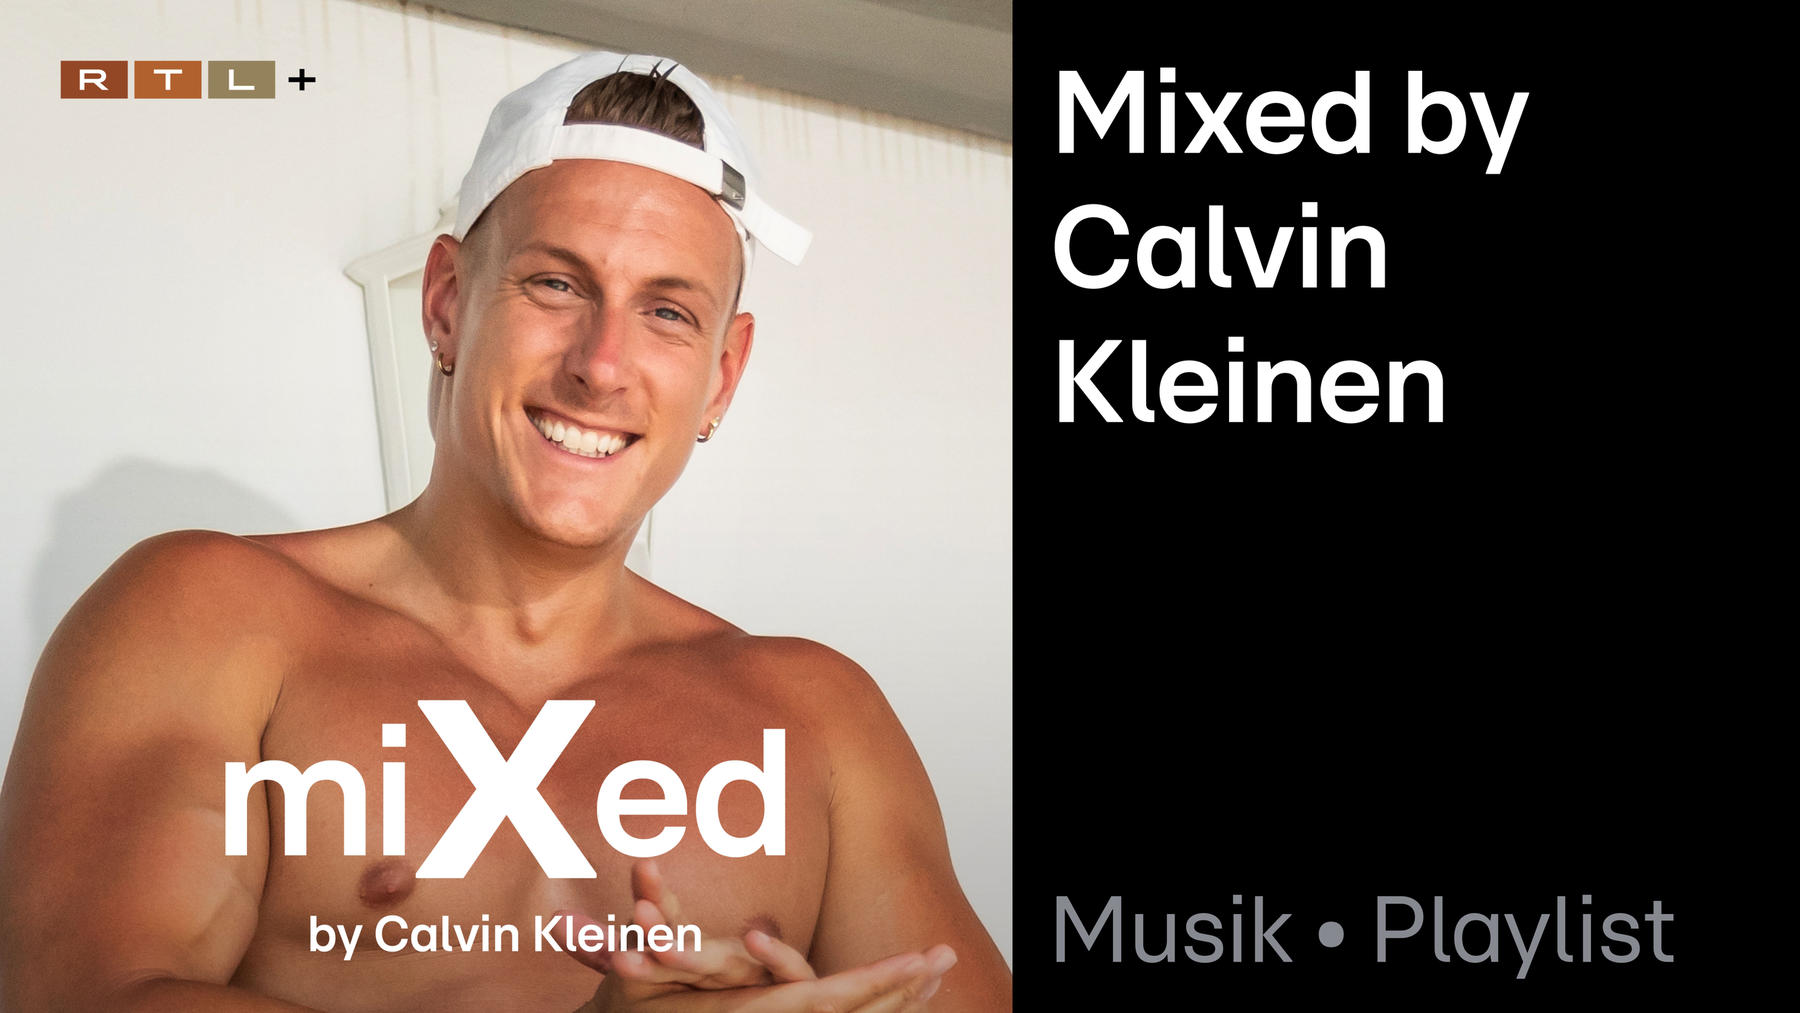 Playlist: Mixed by Calvin Kleinen